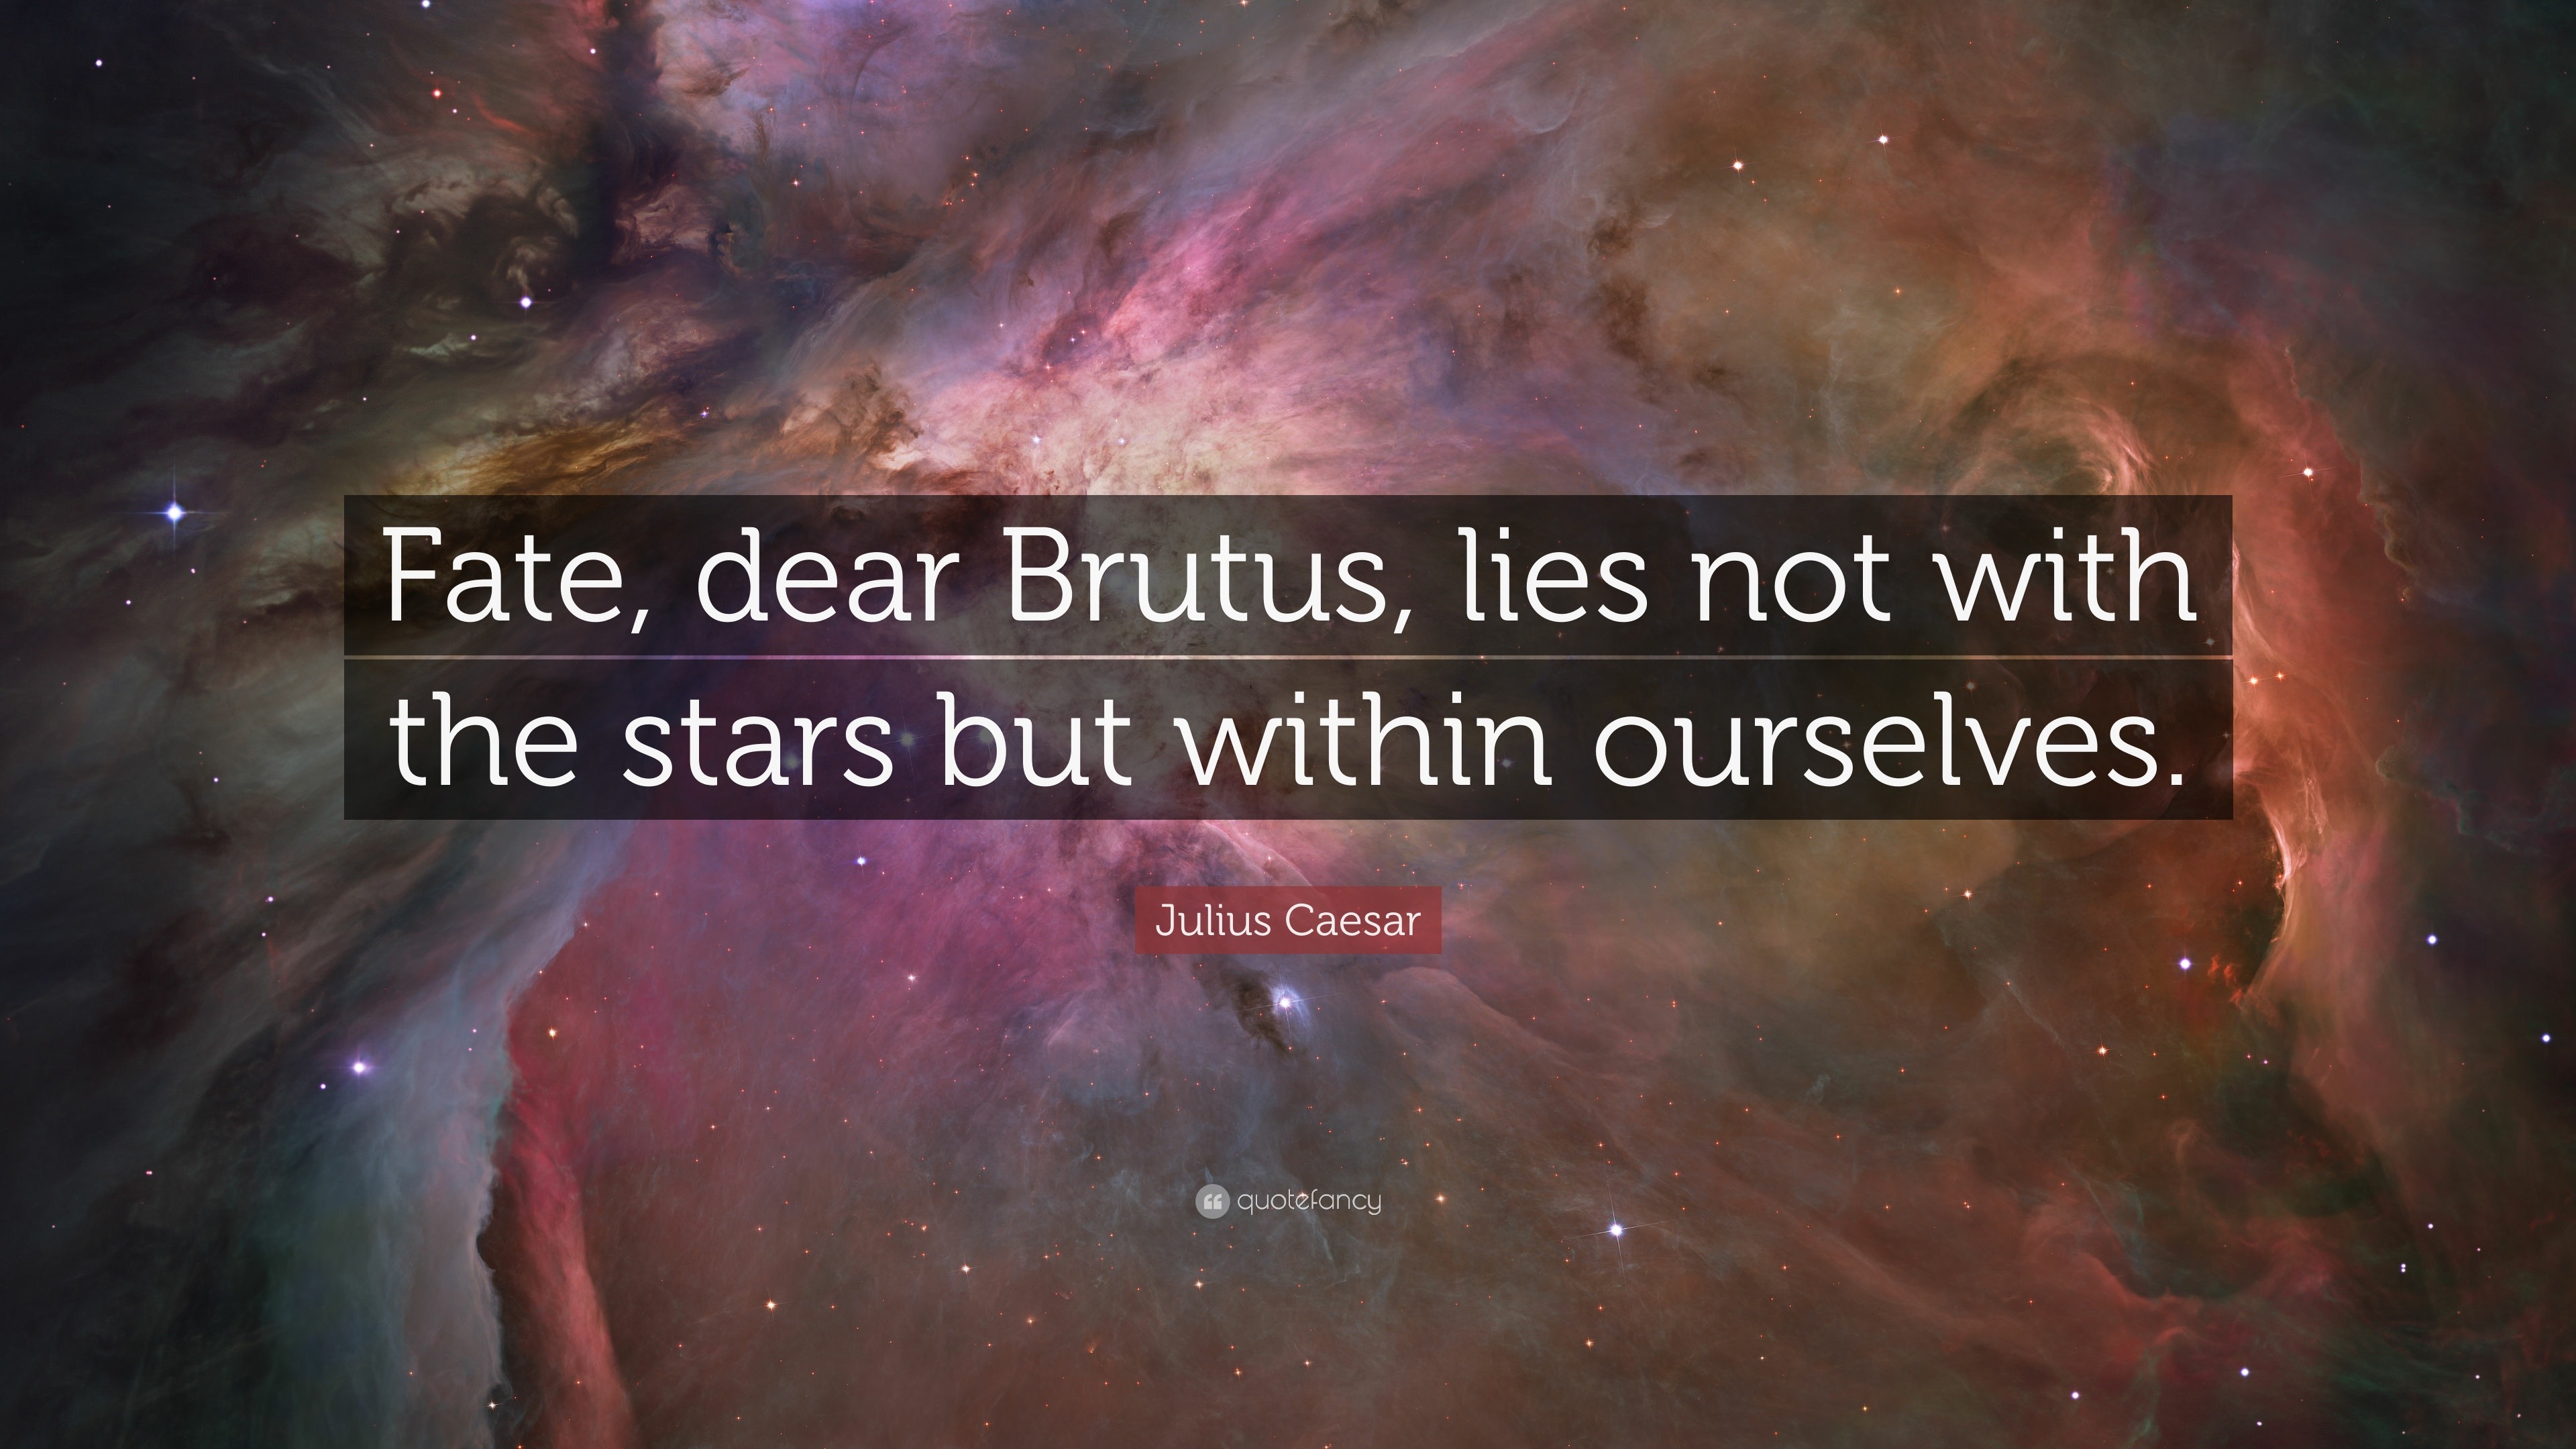 julius caesar quotes fault in our stars